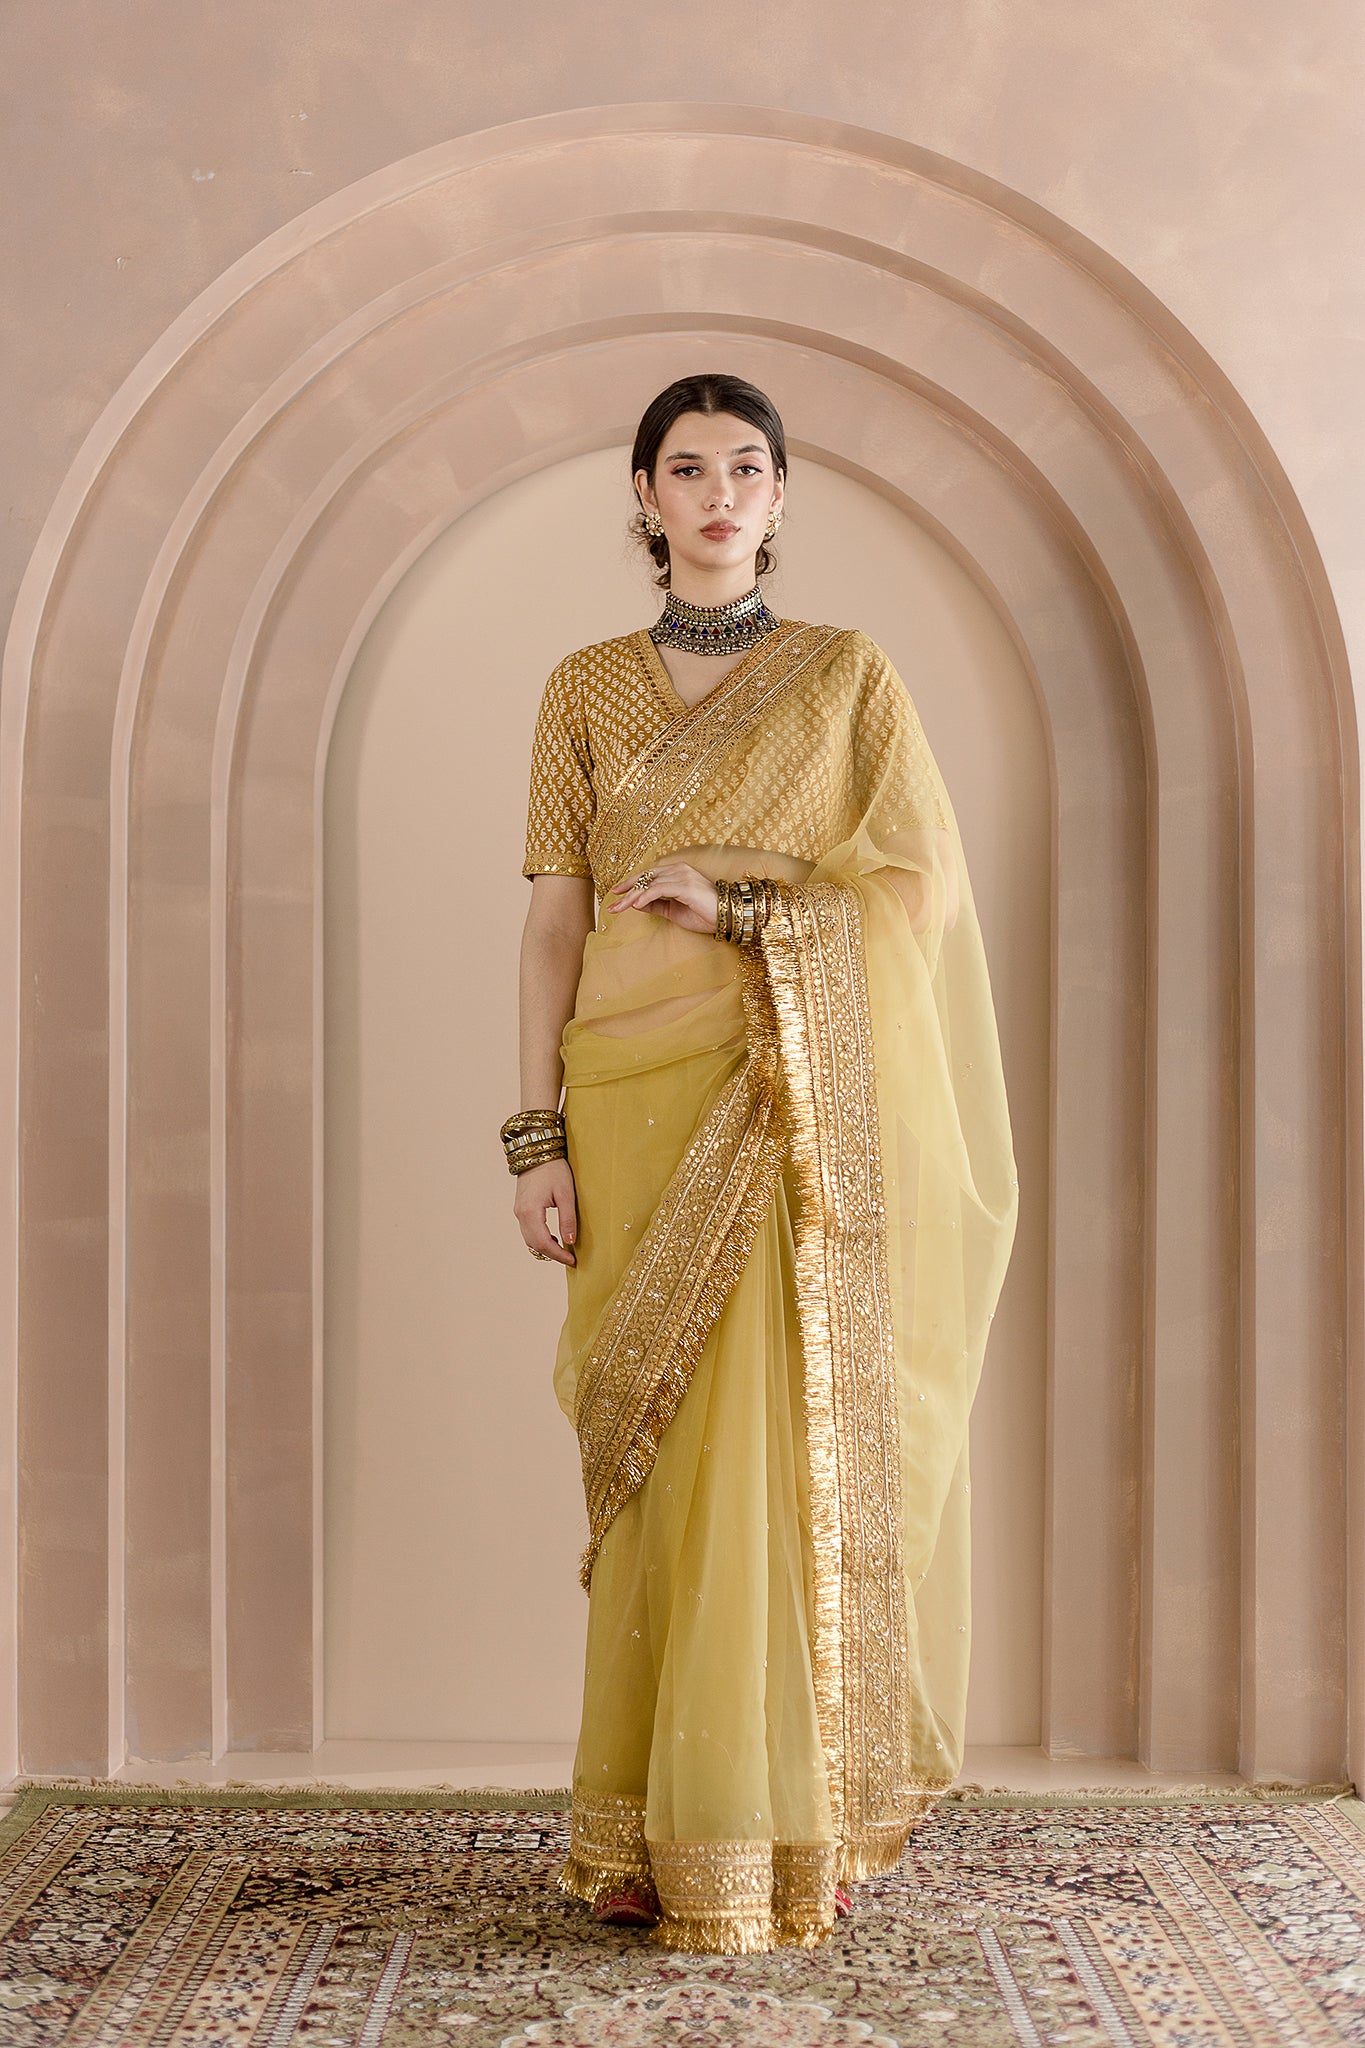 Golden saree | Golden saree, Indian wedding reception outfits, Saree designs